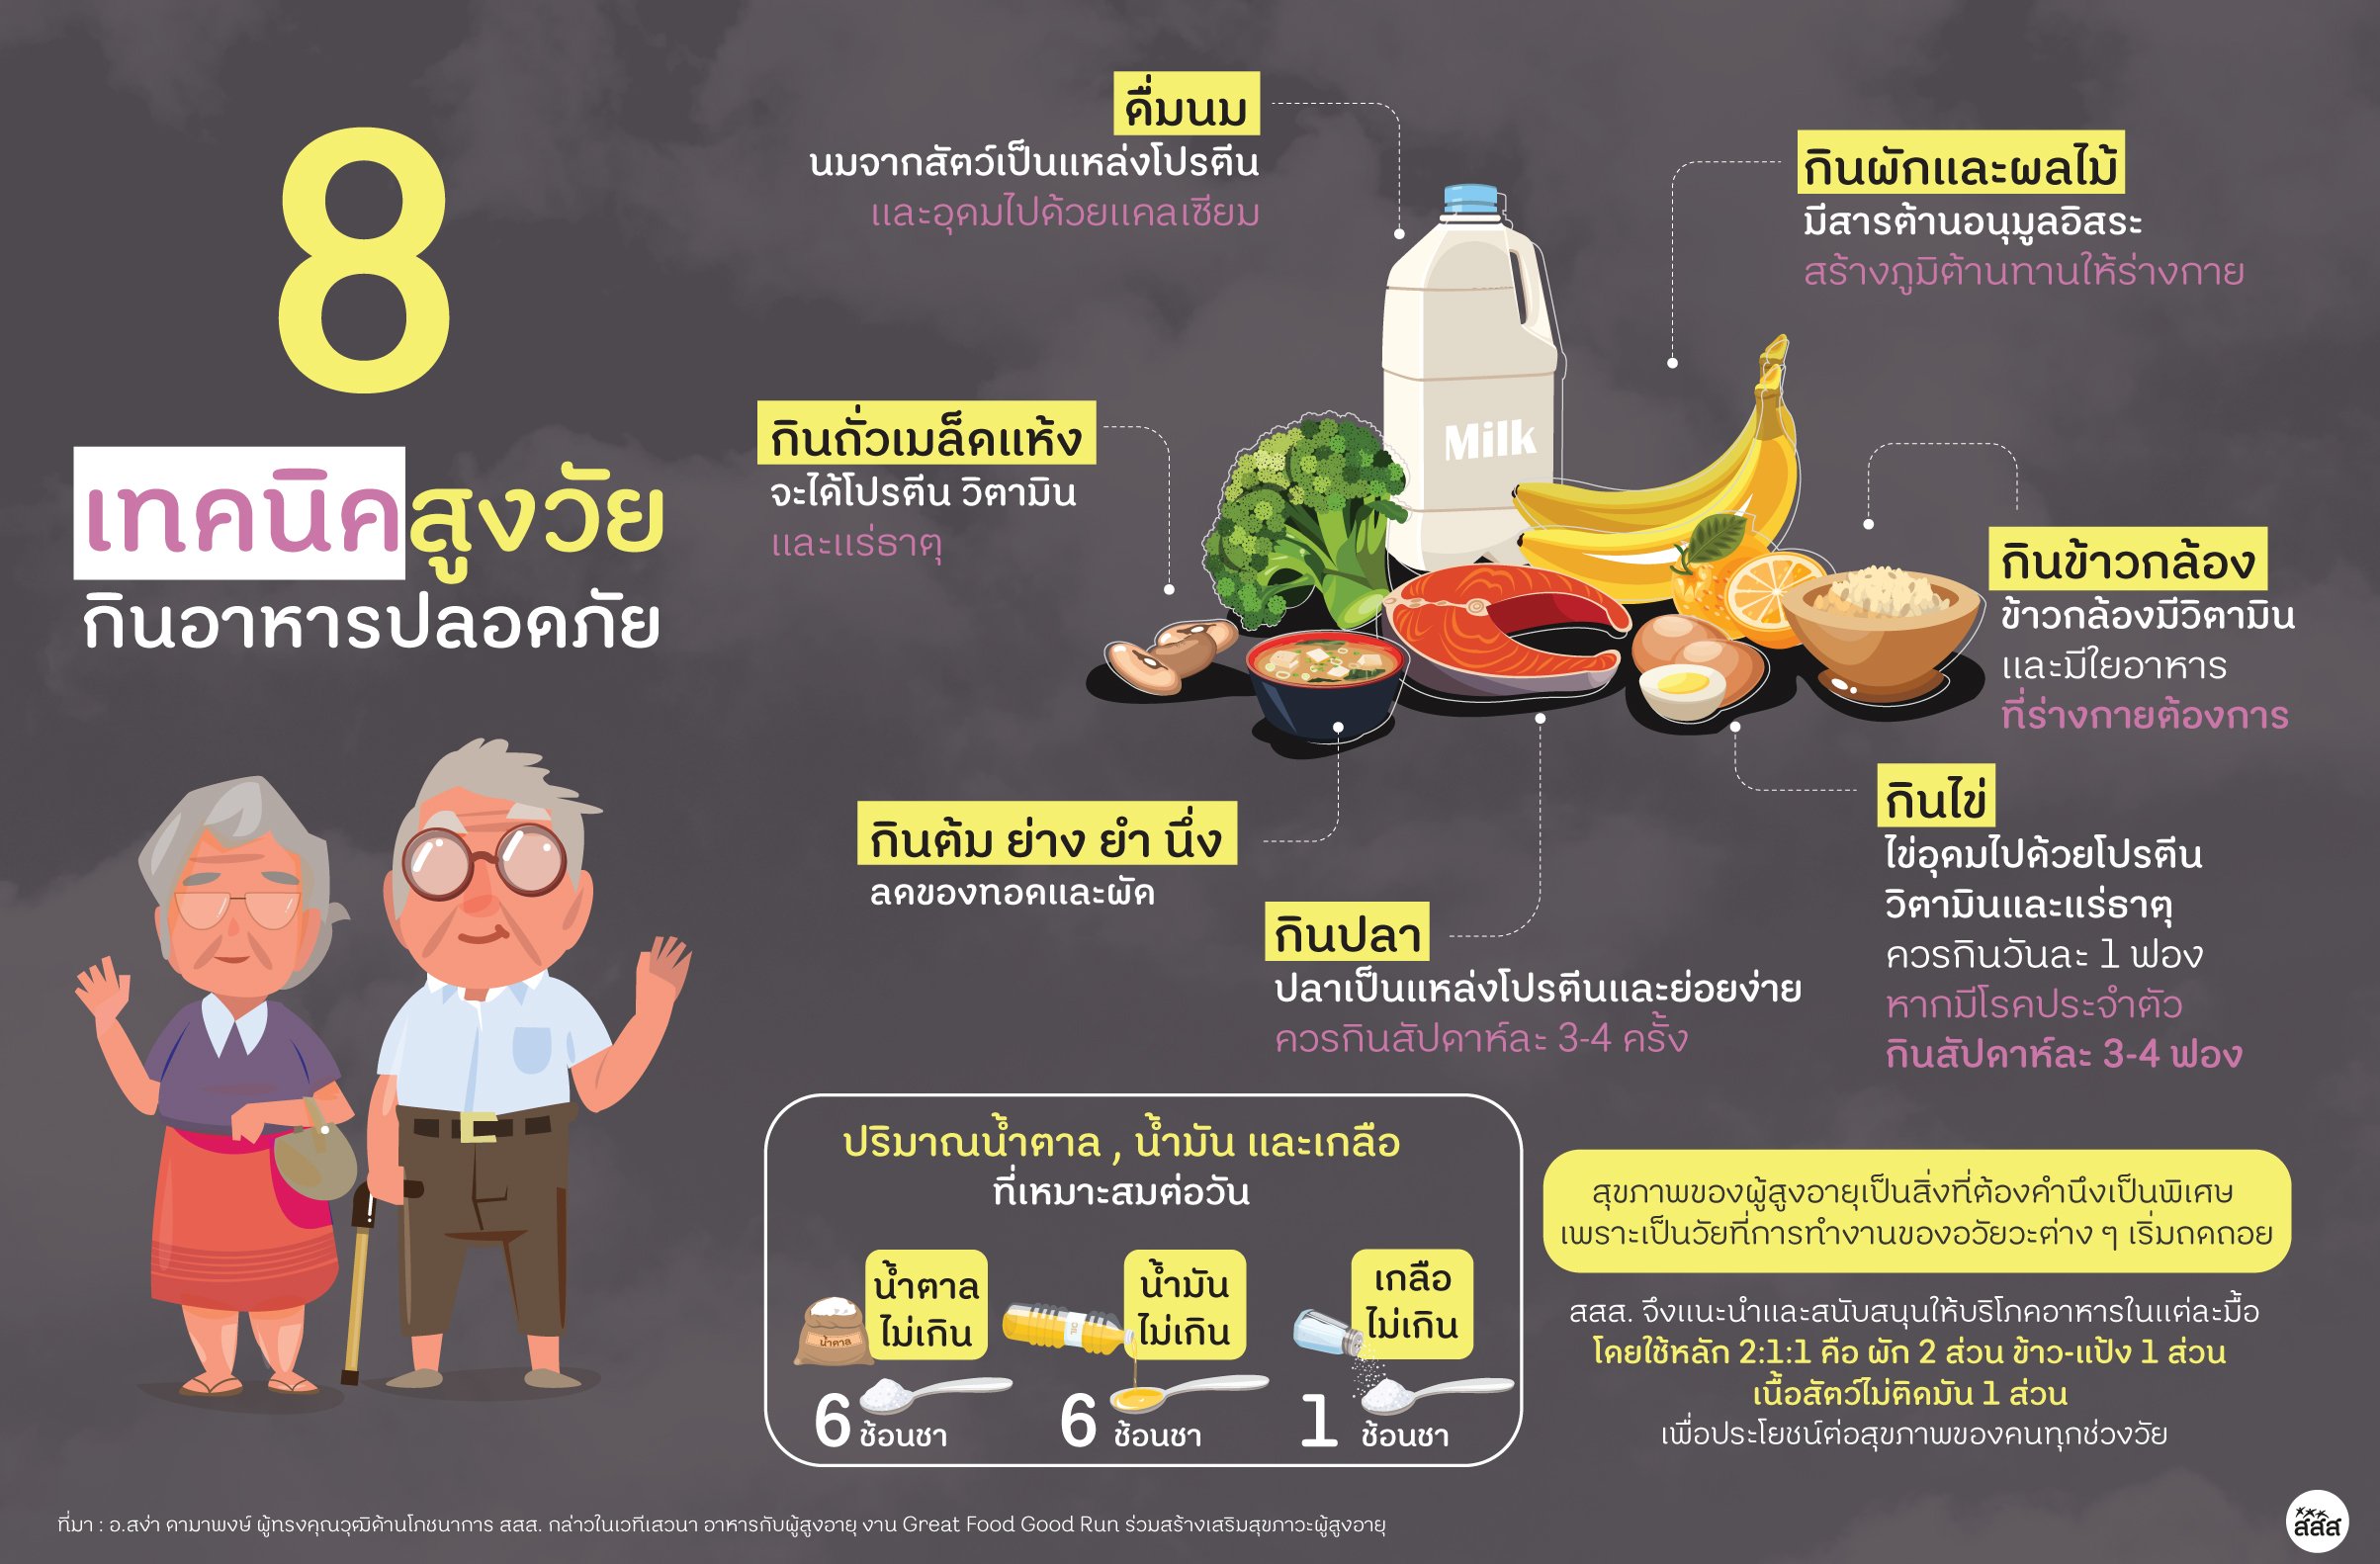 สสส.ห่วงสุขภาพ“ผู้สูงอายุ”ชวนทำอาหารสูตร 6:6:1 thaihealth